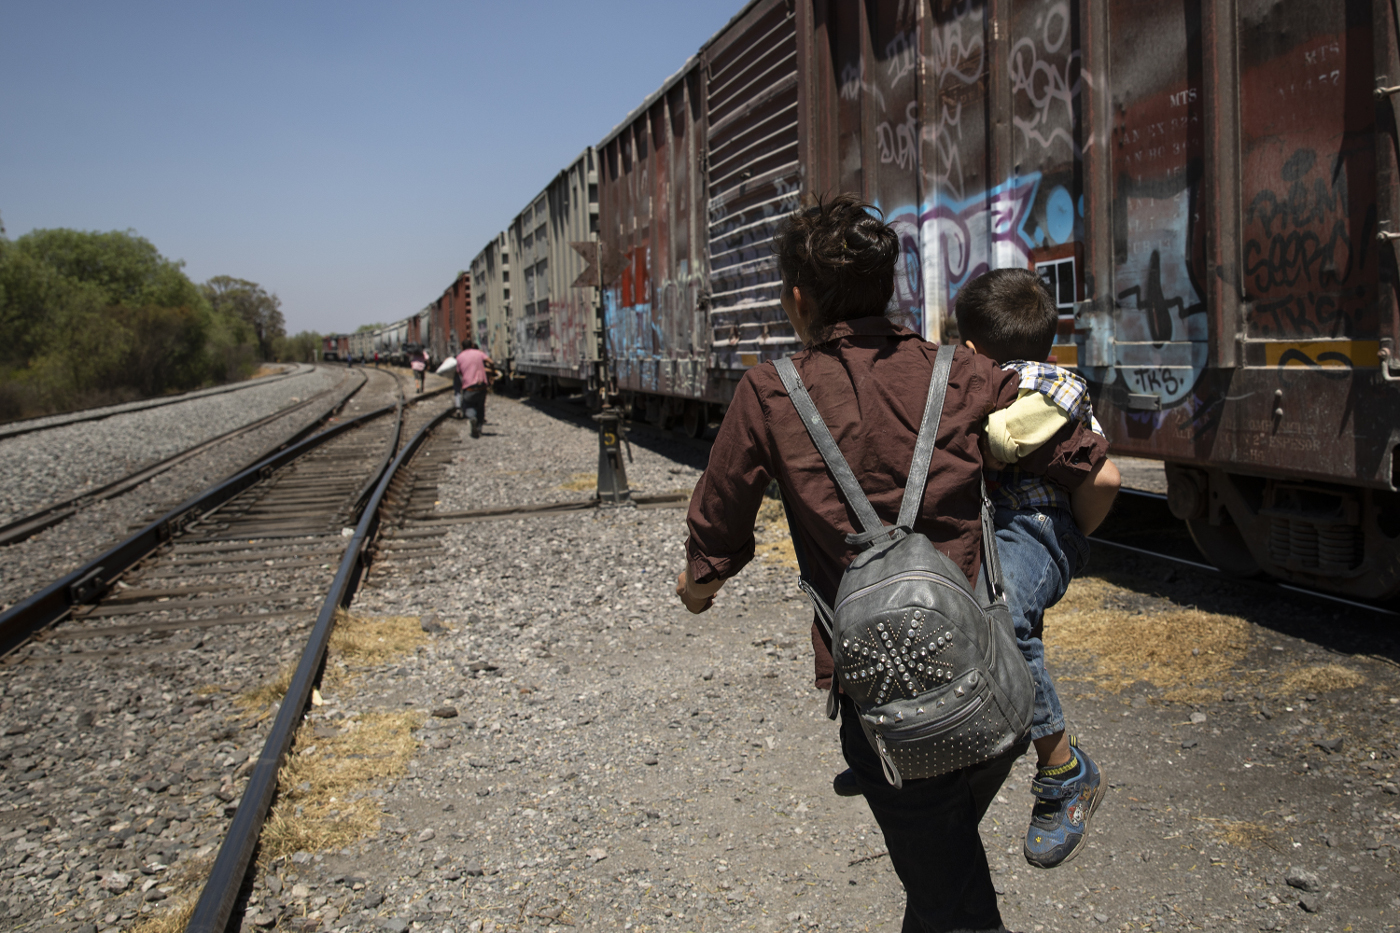 Typische Szene in Bojay, Mexiko, entlang der Strecke des Güterzugs, der in Richtung US-amerikanische Grenze fährt: Mit ihrem Kind auf dem Arm rennt eine junge Frau den Waggons hinterher, die auf Außenplattformen genug Platz für blinde Passagiere bieten. Auf den fahrenden Zug aufzuspringen, ist ein großes Risiko. Foto: Adveniat/Hans-Máximo Musielik